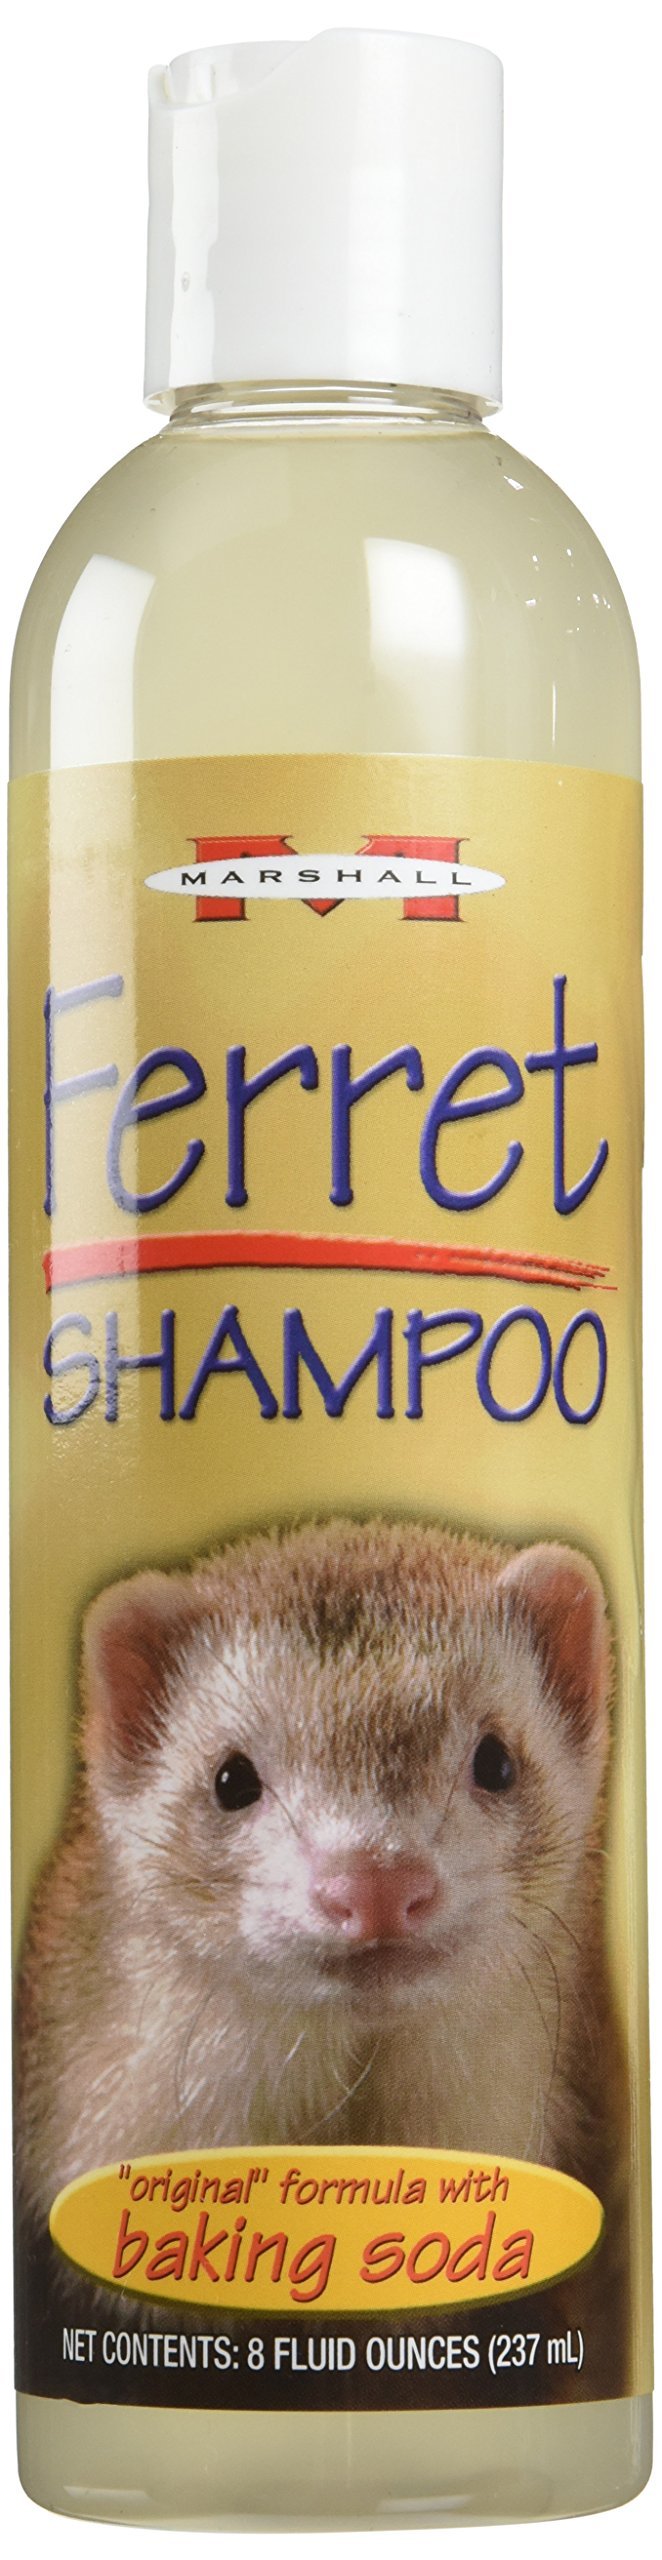 [Australia] - Ferret Shampoo 8 Oz 